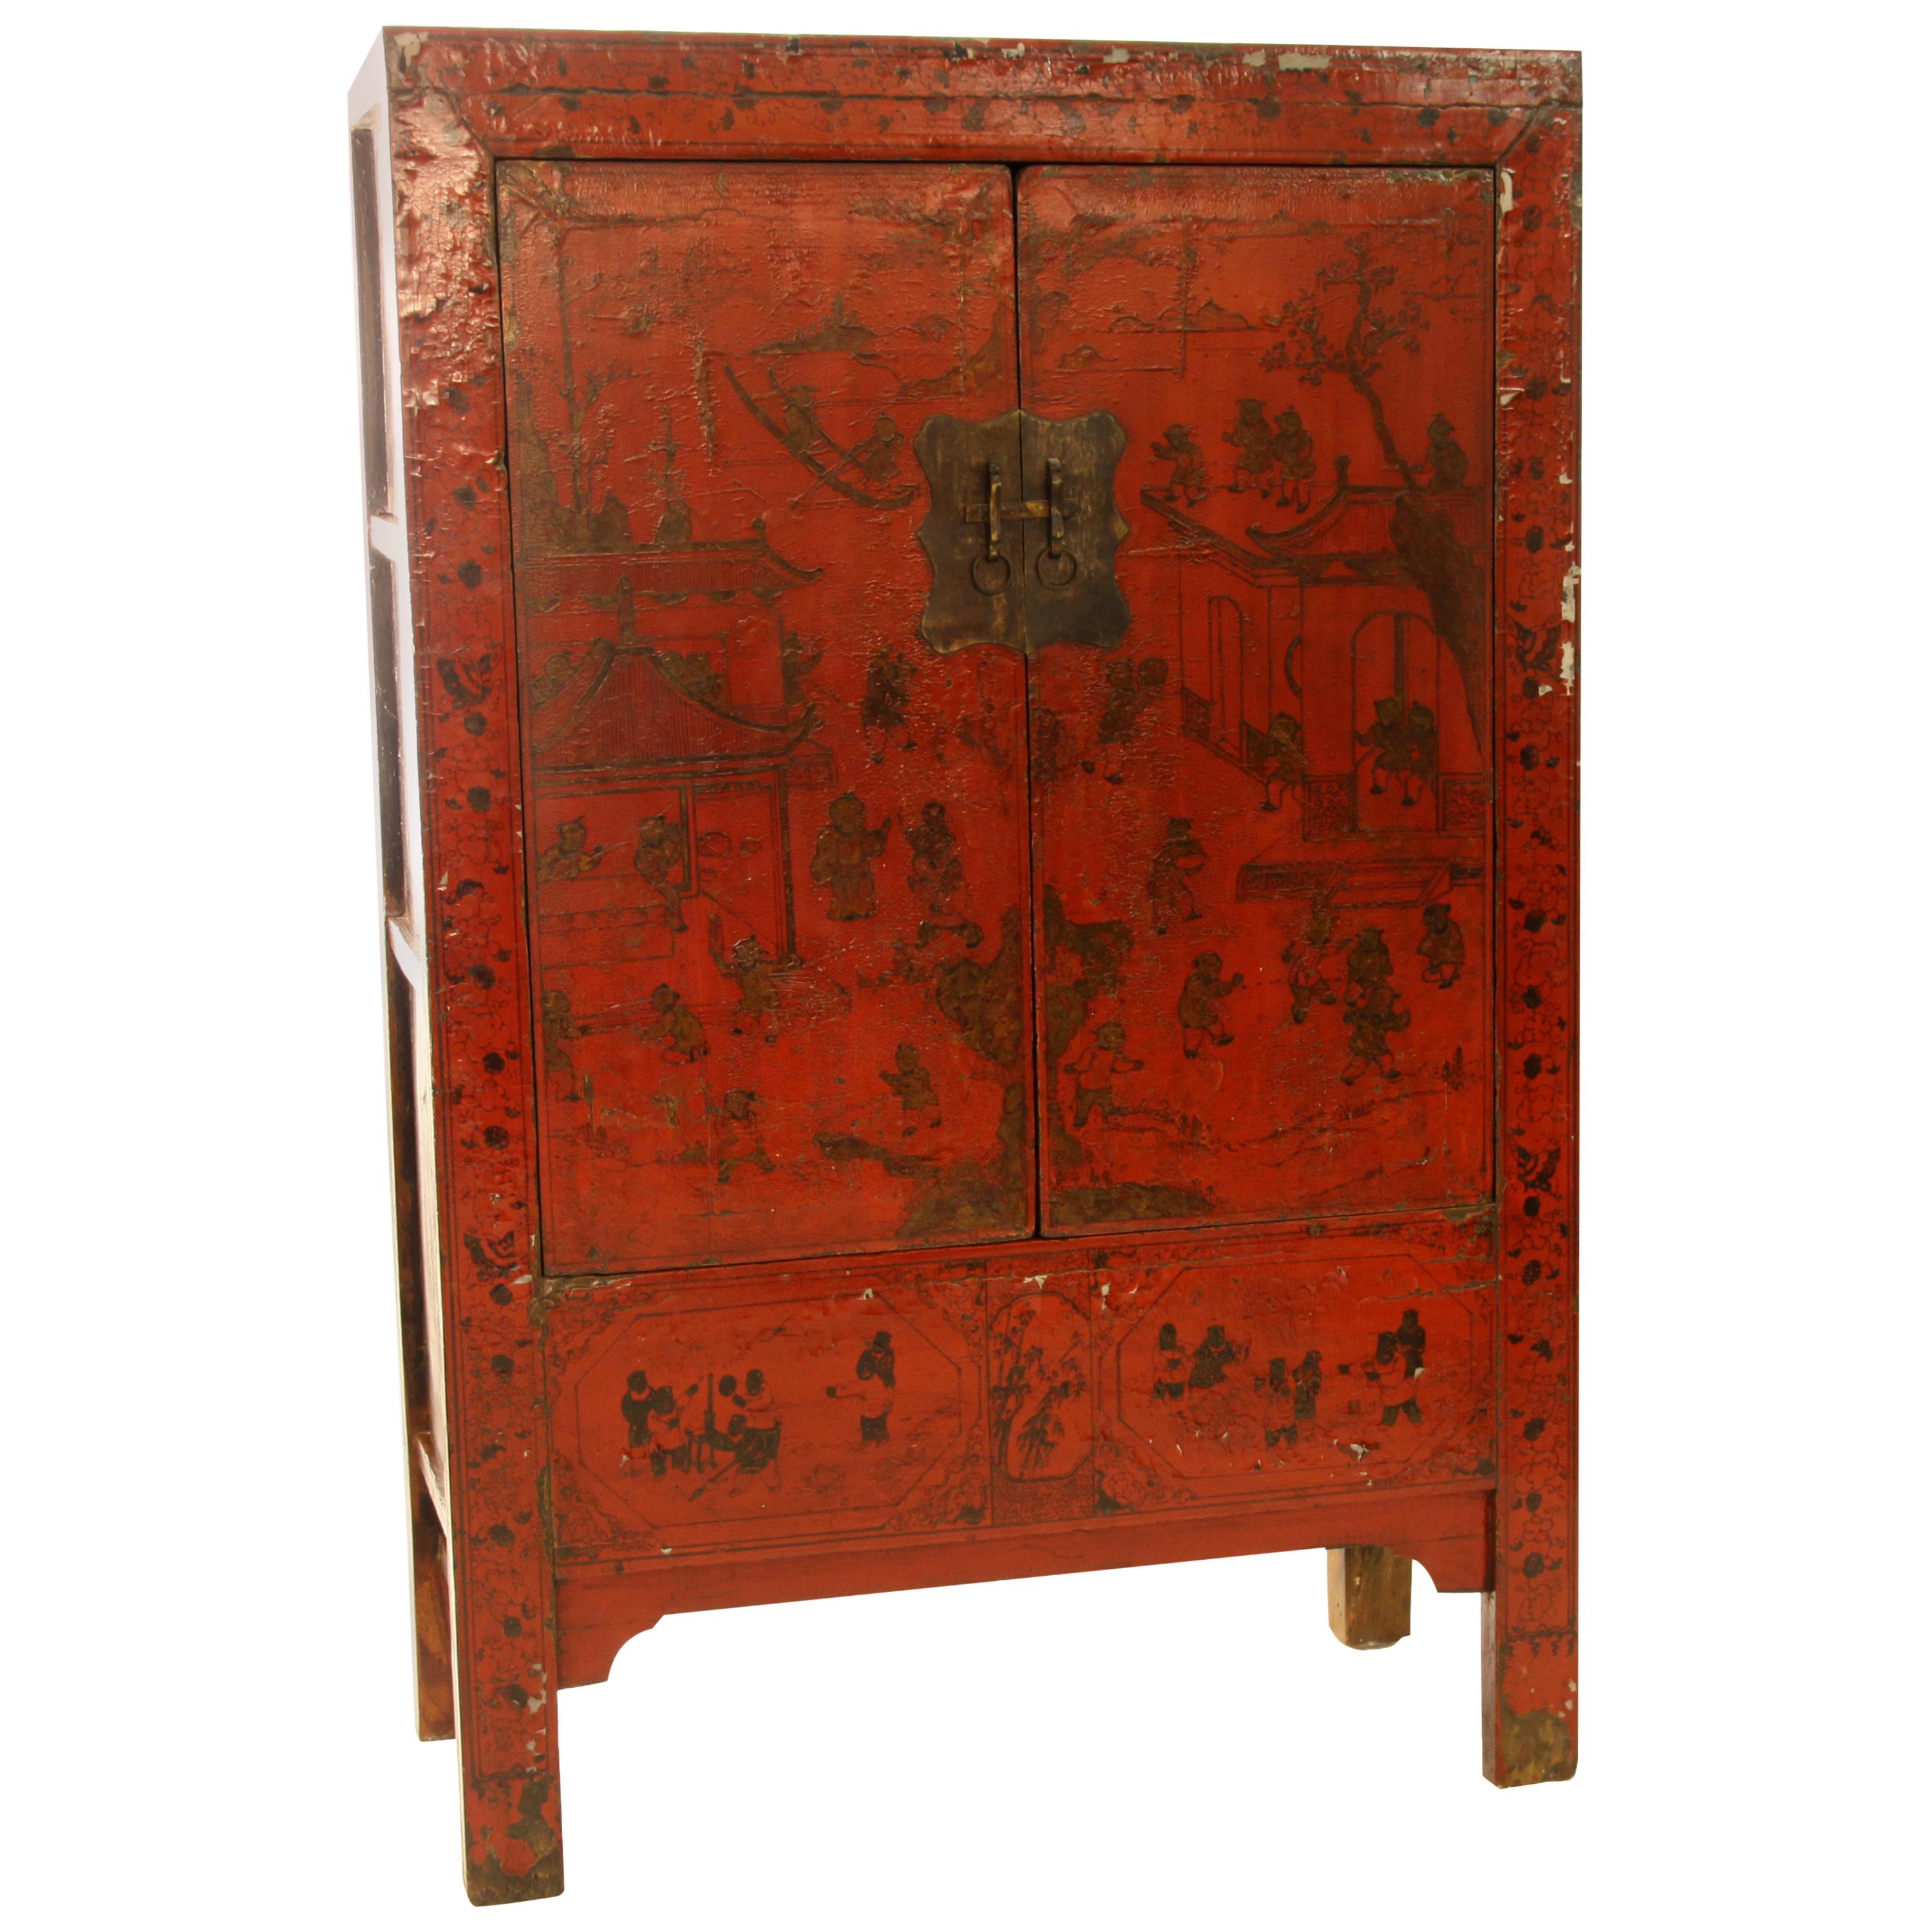 Ancienne armoire chinoise en laque rouge avec peinture dorée à la main